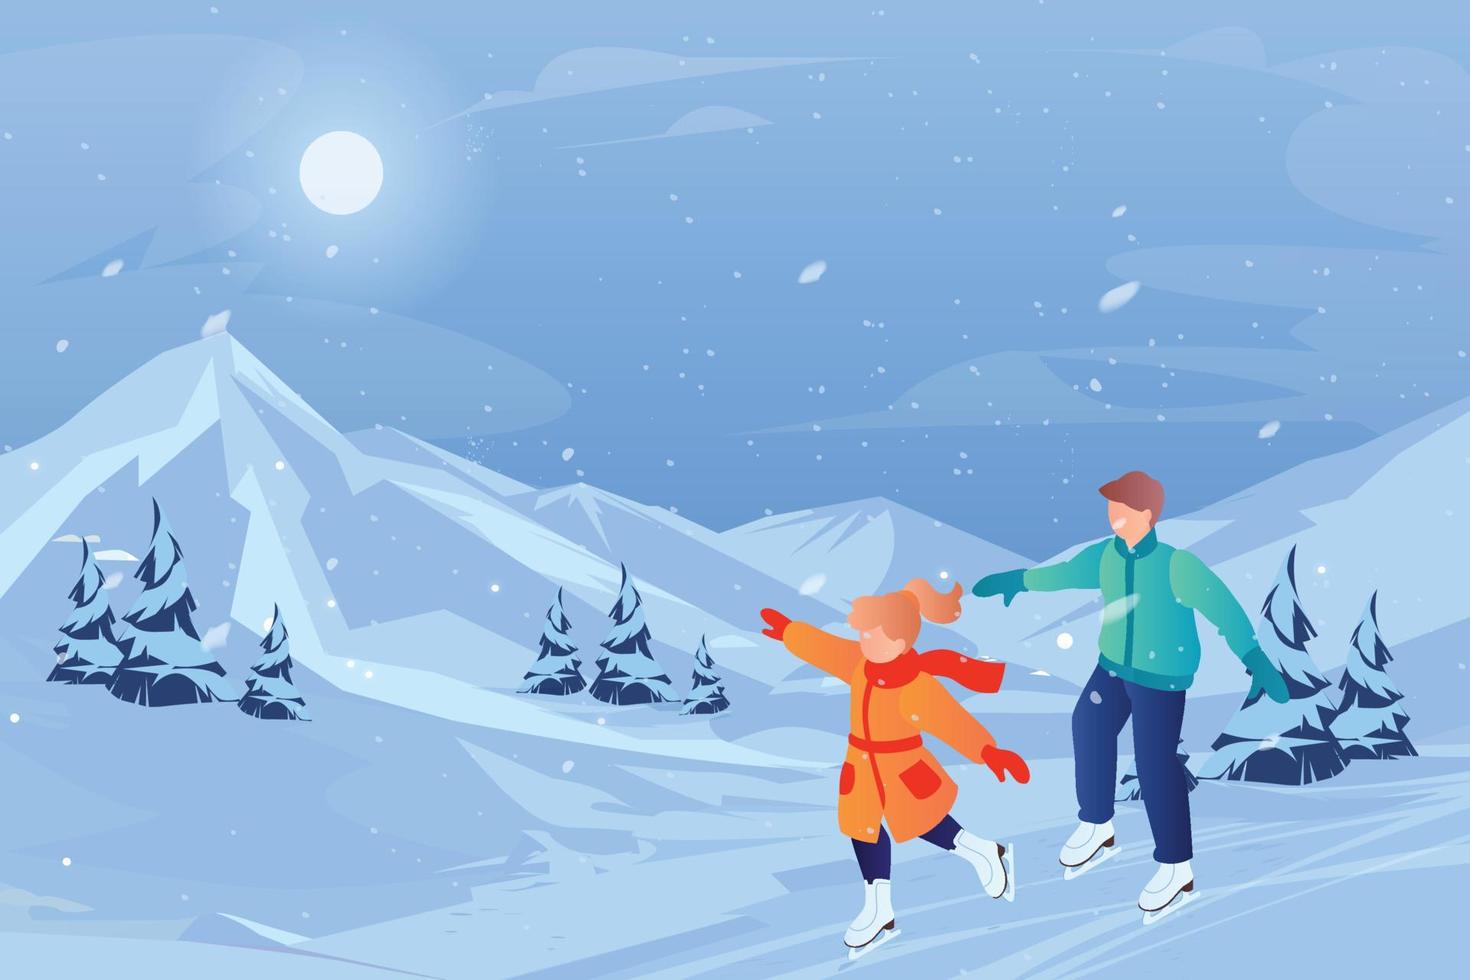 joyeux noël et bonne année conception de carte de voeux avec le père noël sur traîneau illustration d'hiver confortable vecteur